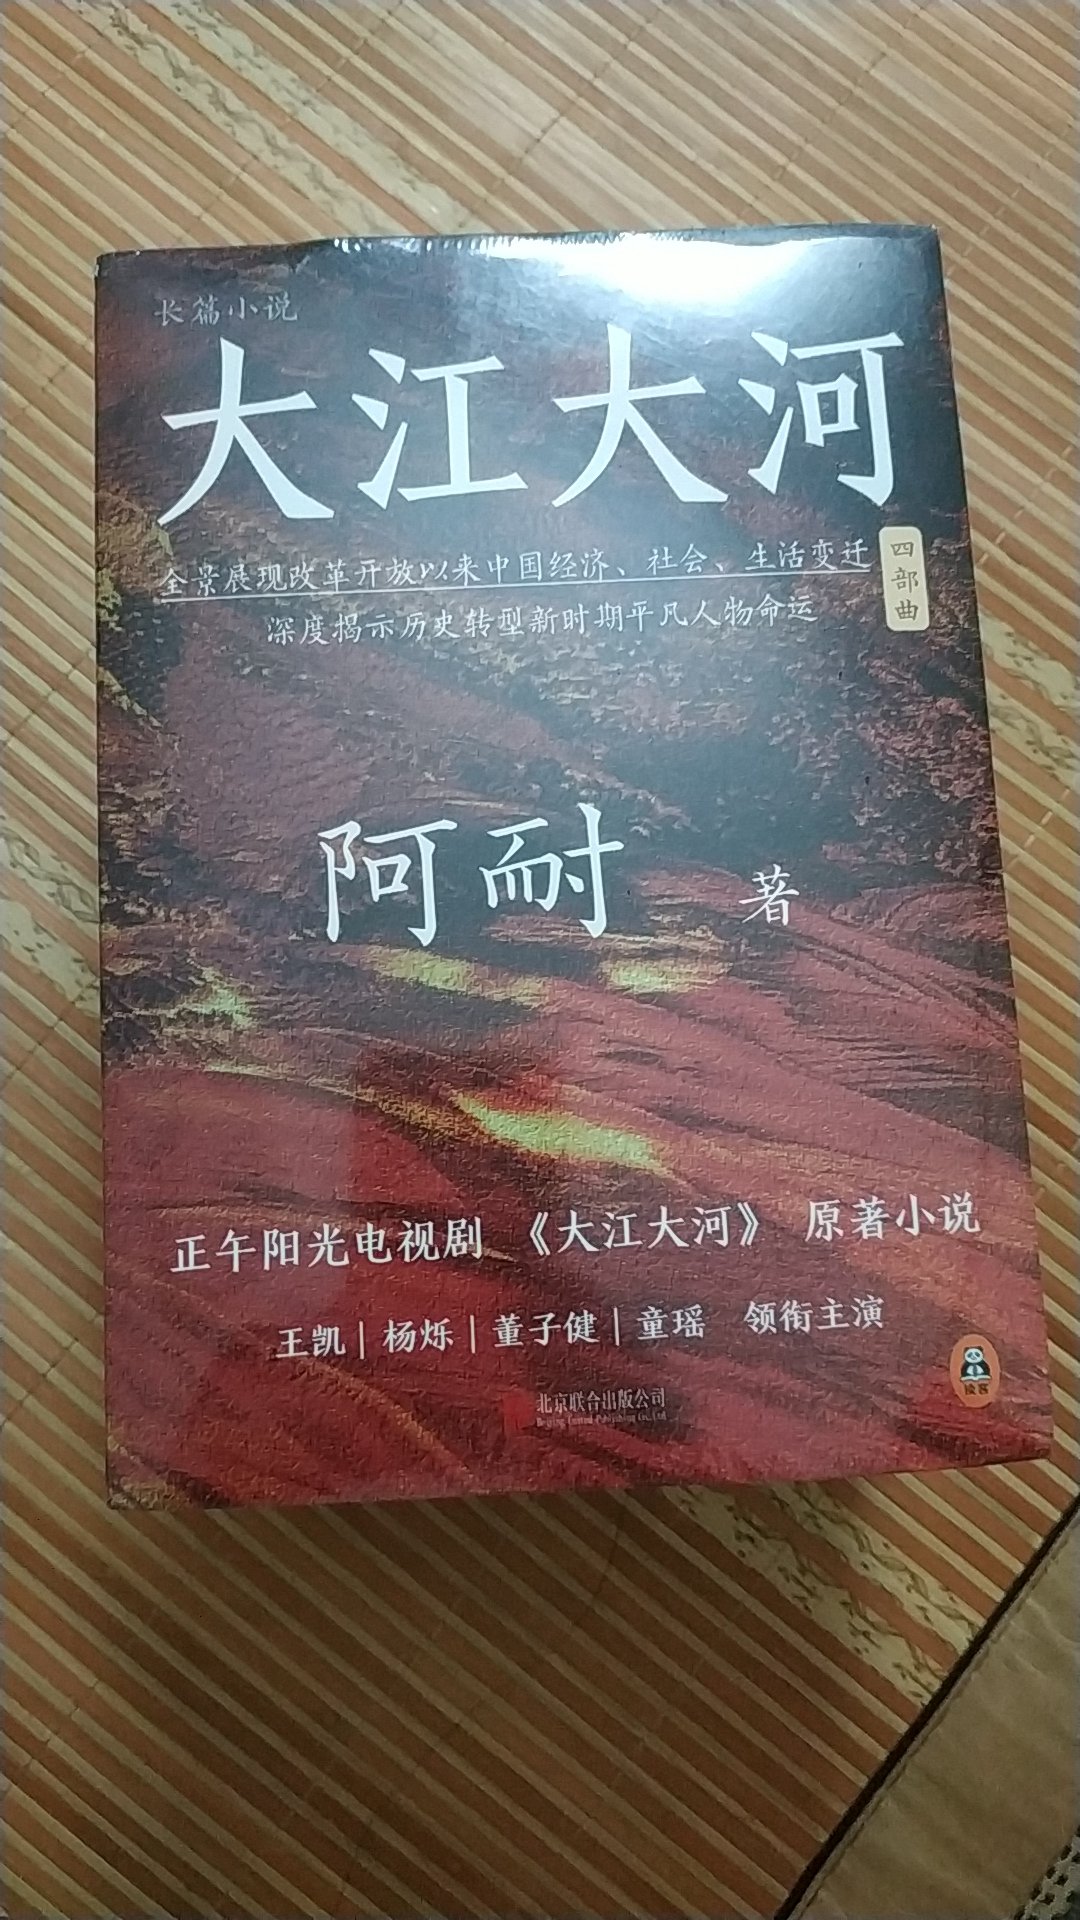 描写中国**开放的奇书，全景展现变革时代。